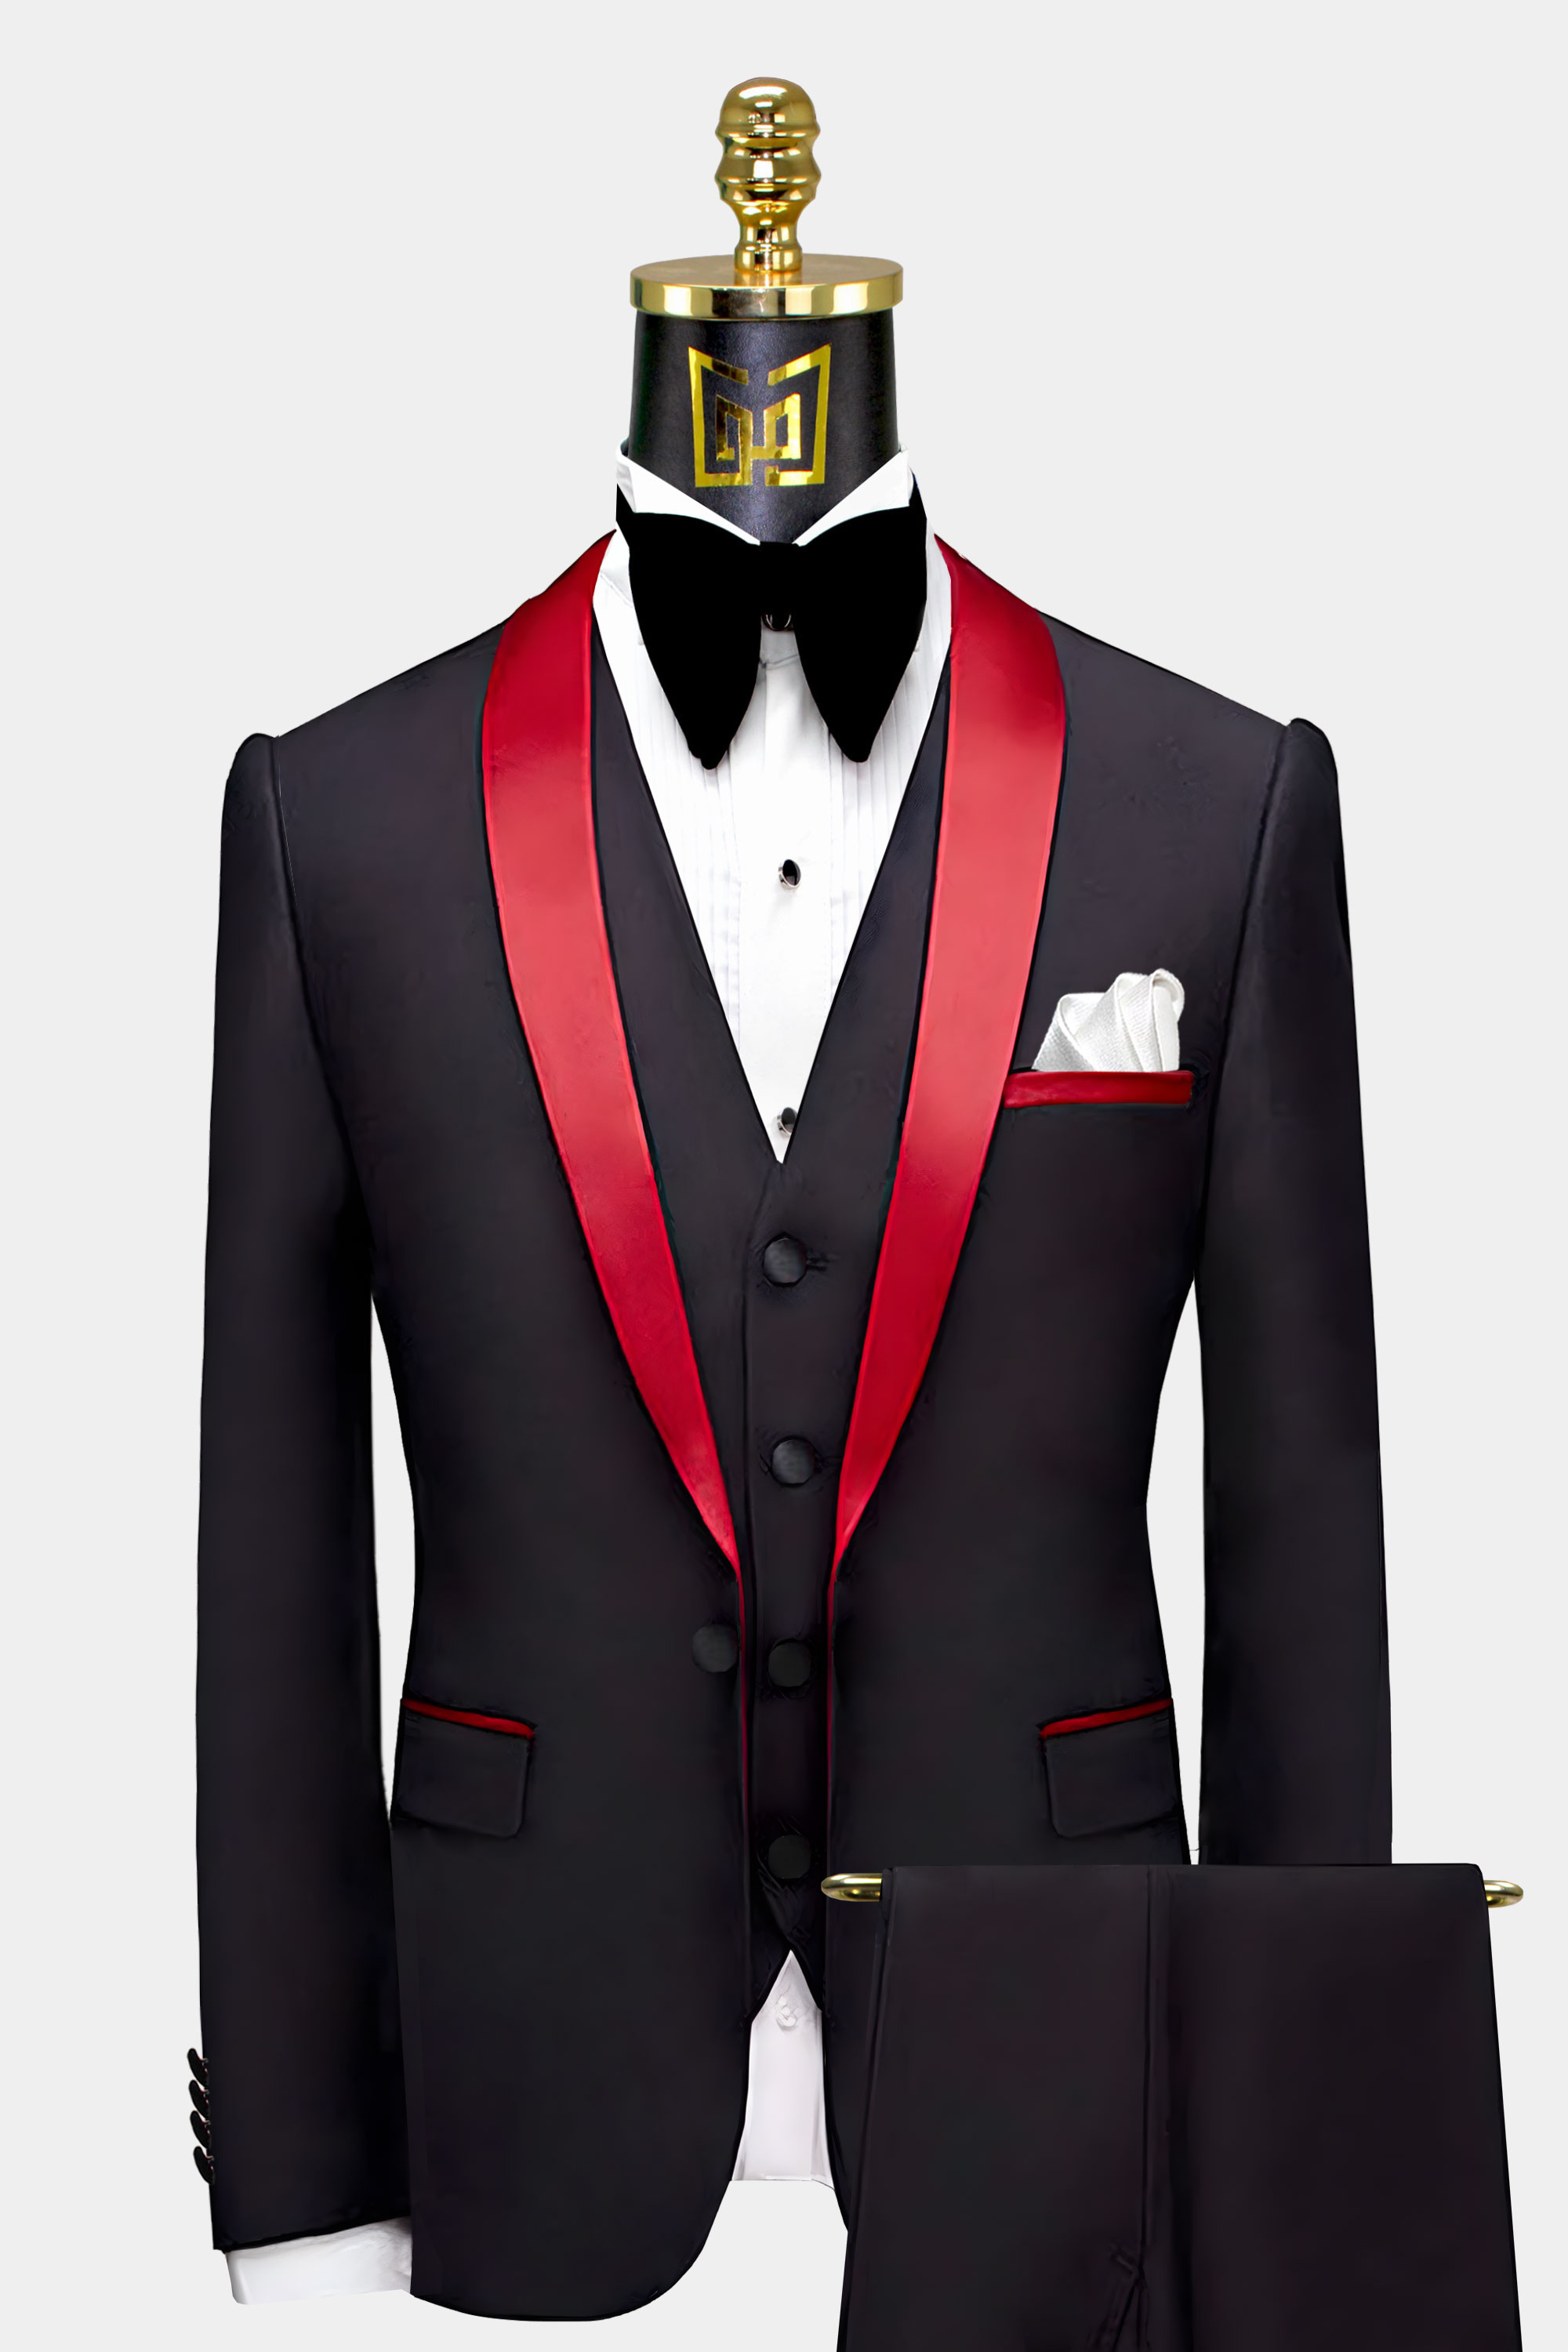 Black-Tuxedo-with-Red-Trim-Groom-Wedding-Prom-Suit-from-Gentlemansguru.com